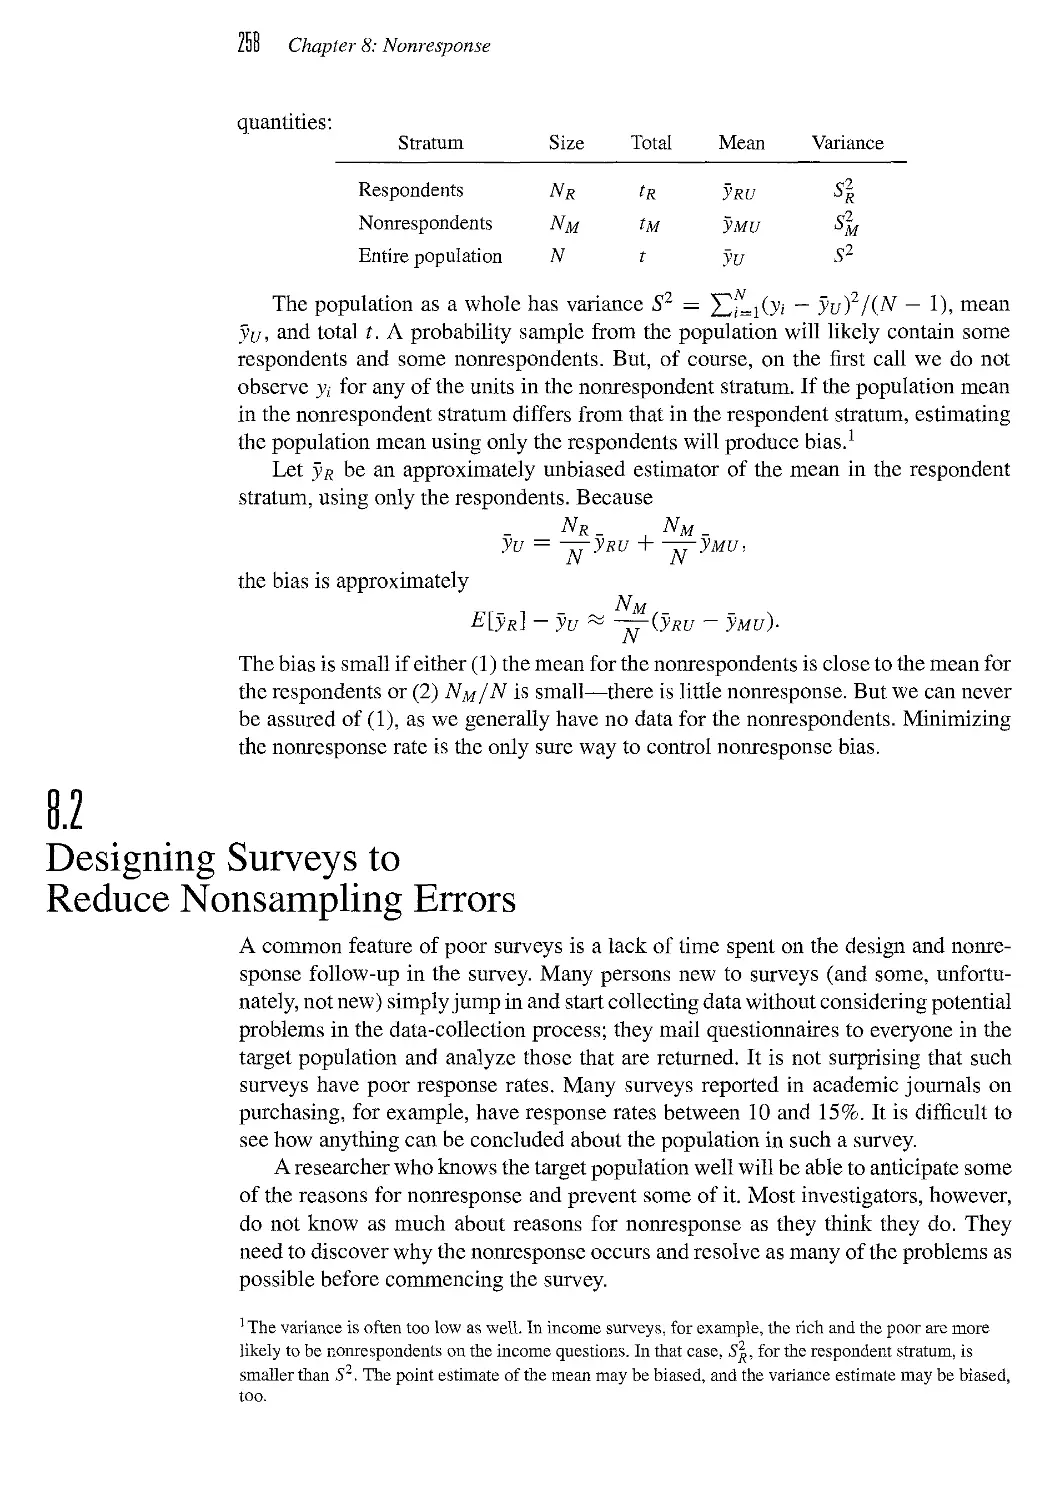 8.2 Designing Surveys to Reduce Nonsampling Errors